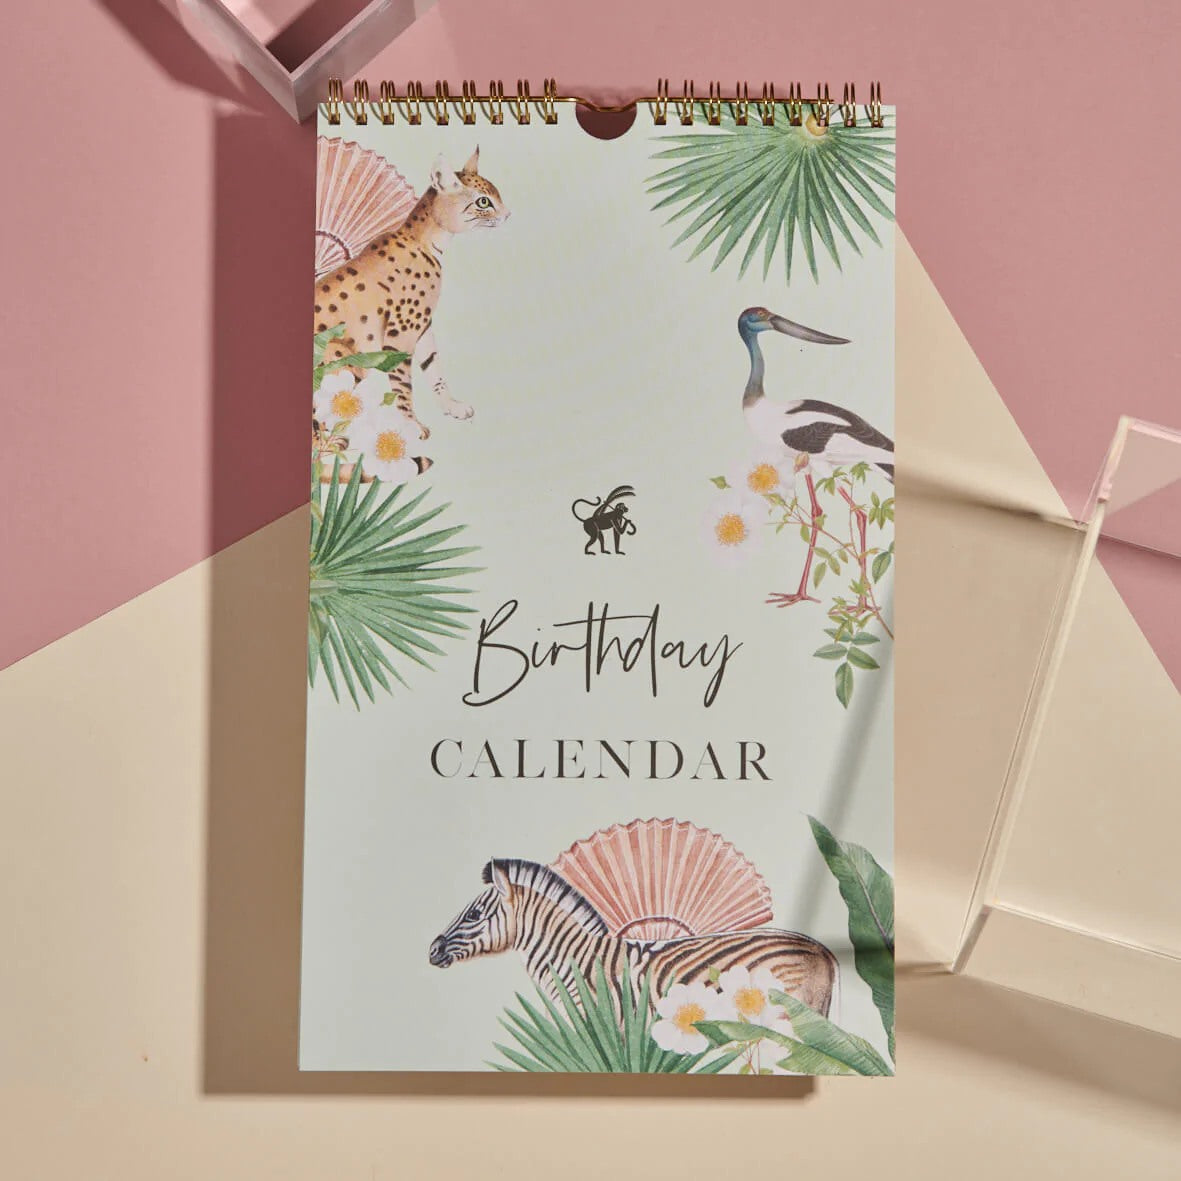 Birthday Callendar - Calendário de Aniversários